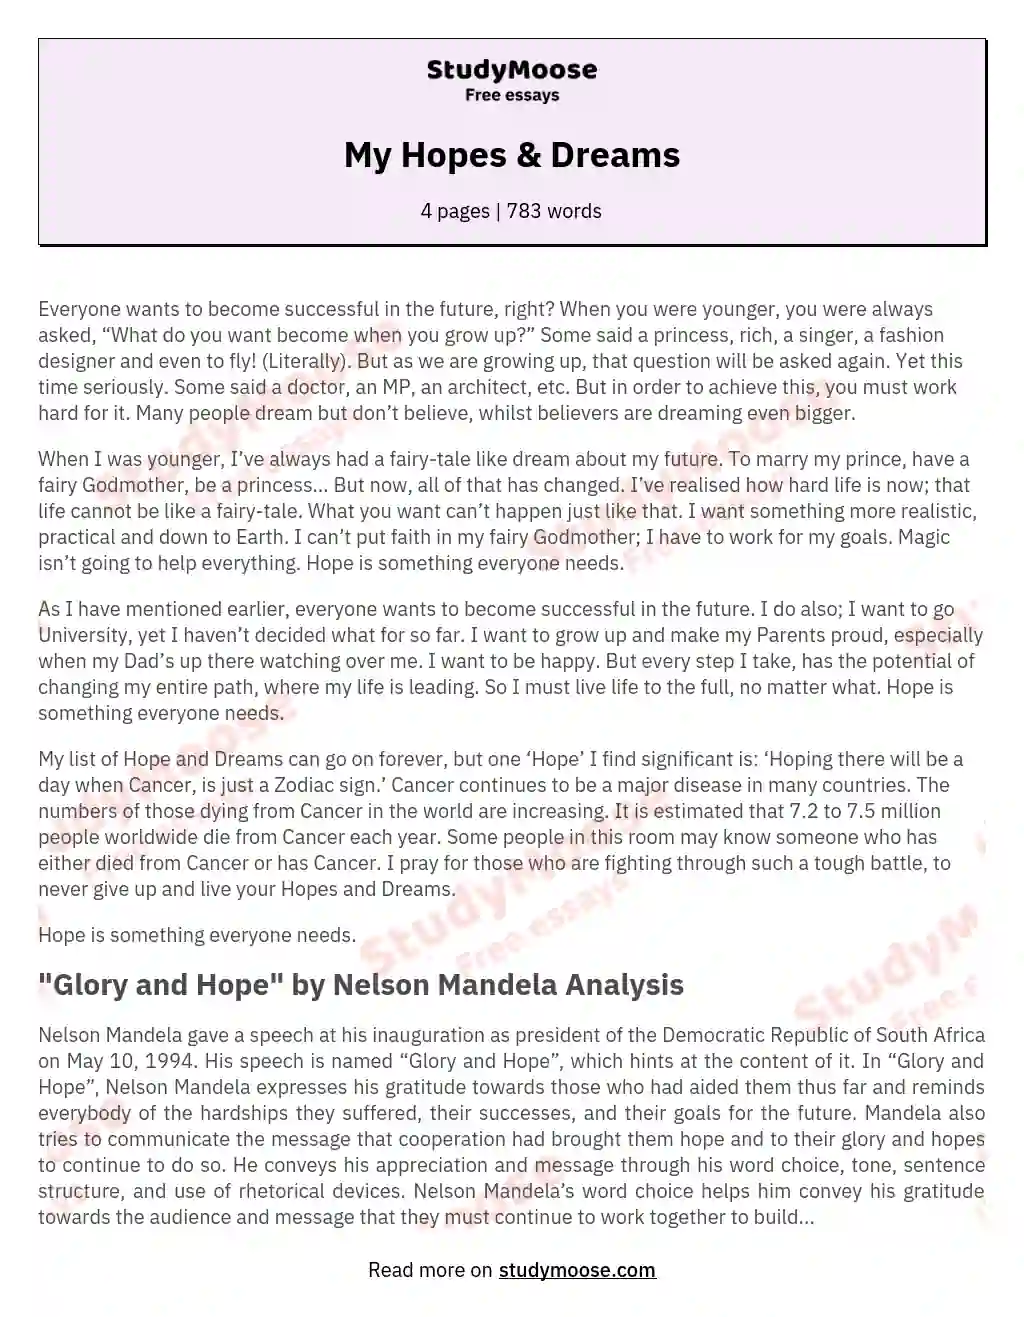 My Hopes & Dreams essay